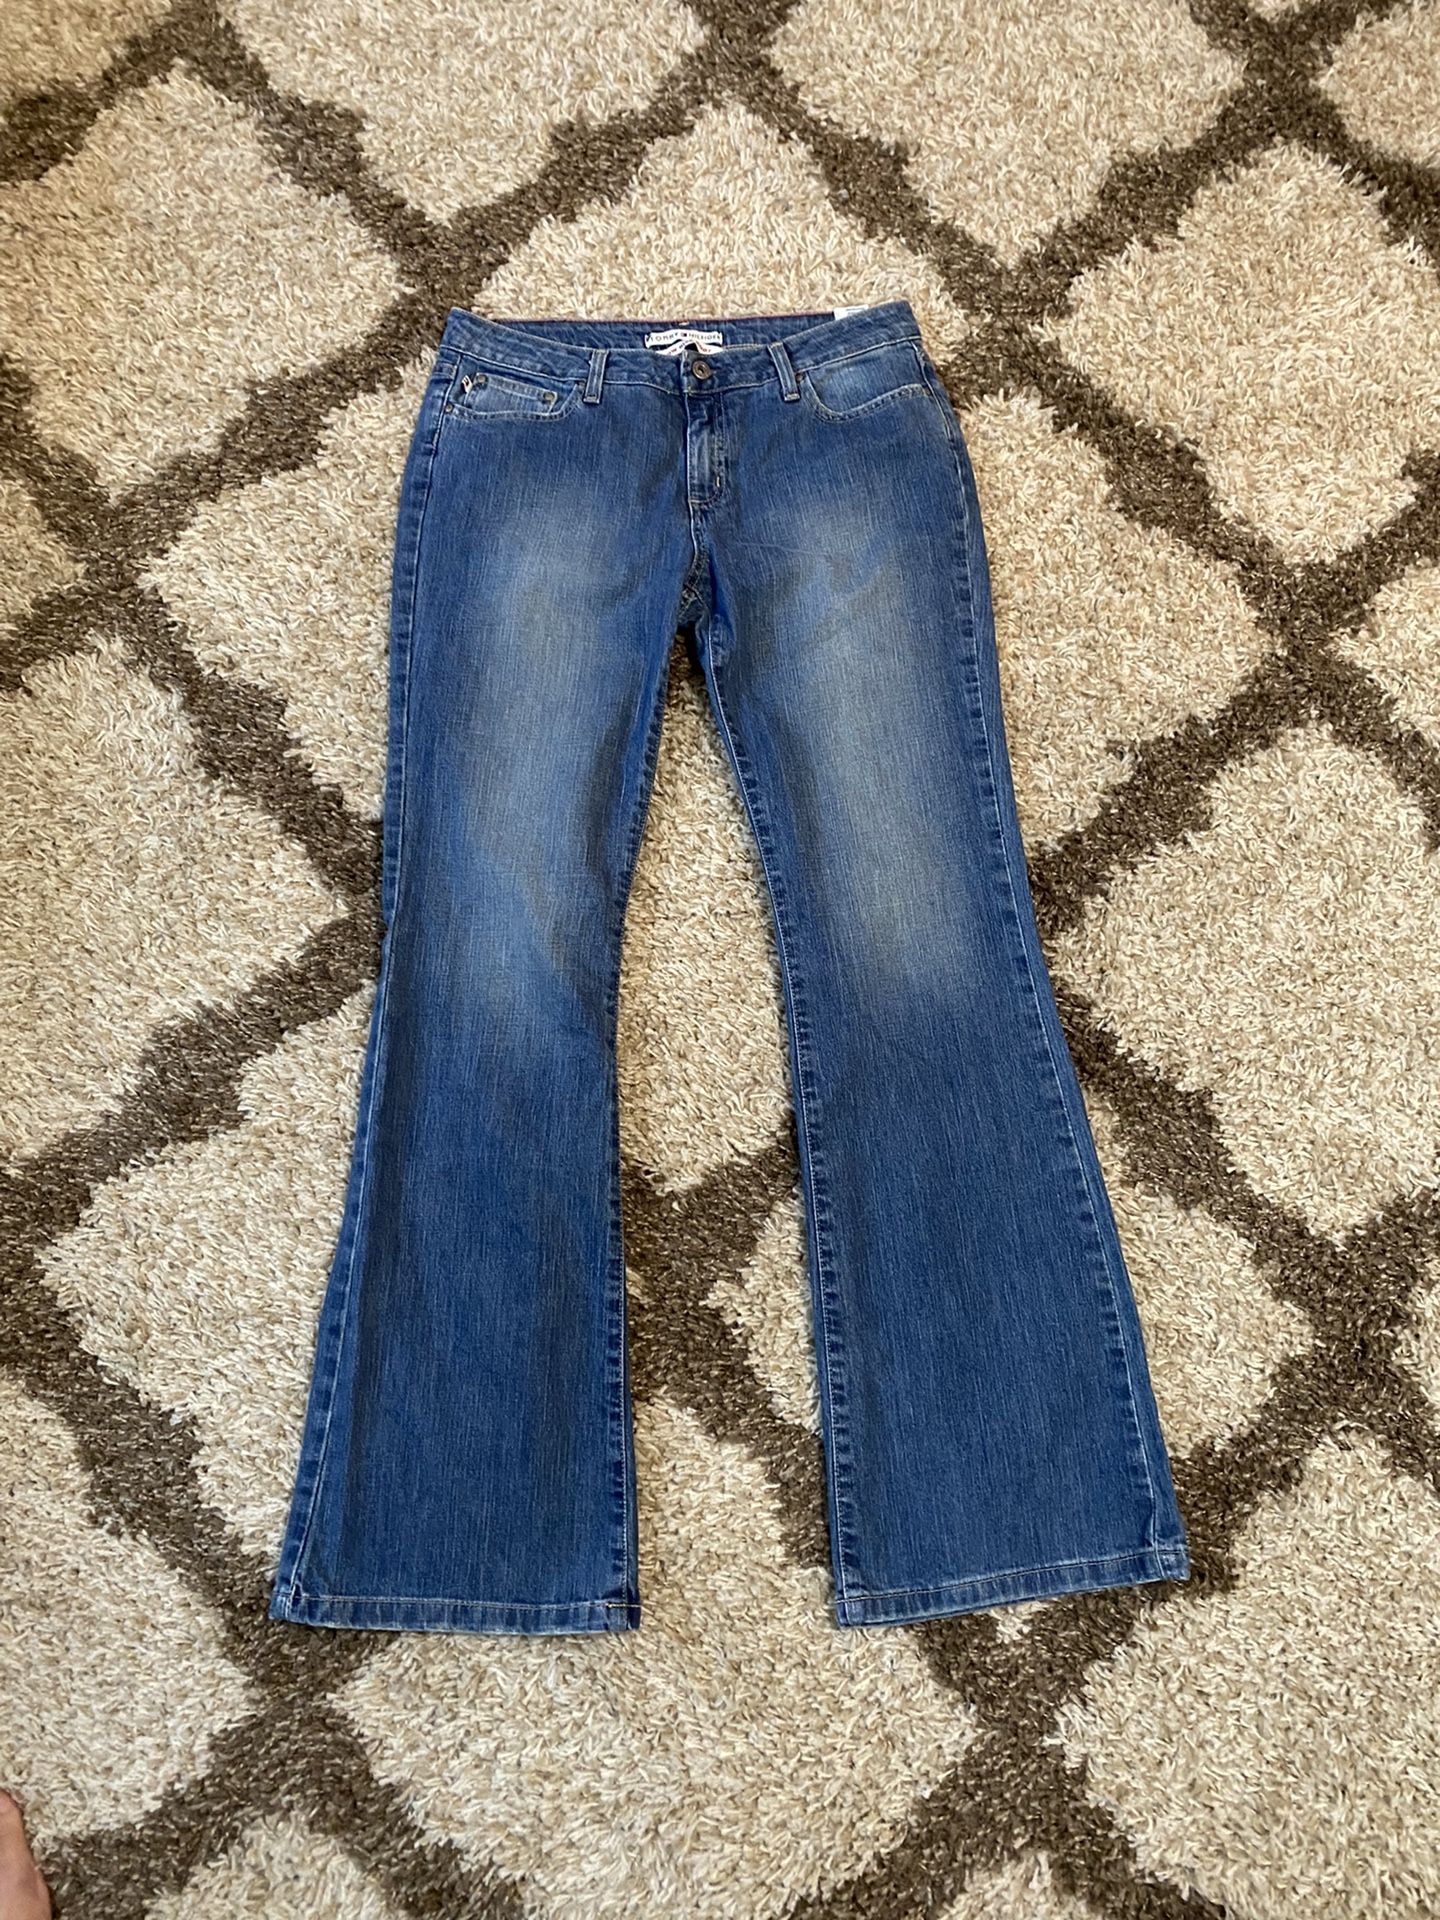 Women’s Jeans Size 10